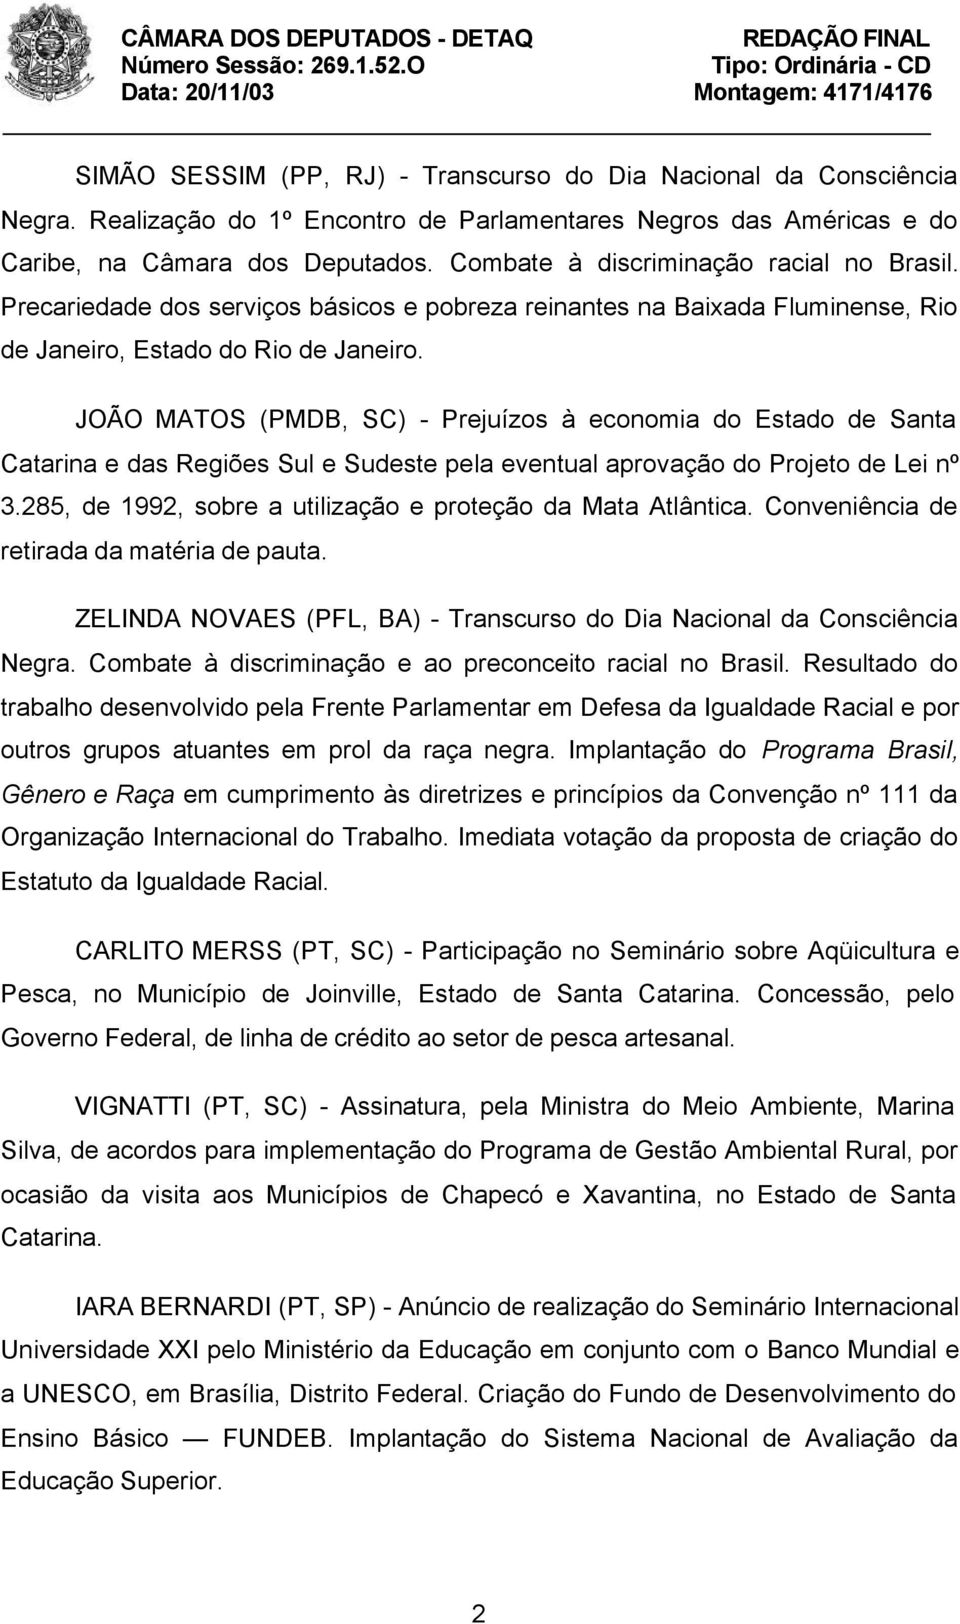 JOÃO MATOS (PMDB, SC) - Prejuízos à economia do Estado de Santa Catarina e das Regiões Sul e Sudeste pela eventual aprovação do Projeto de Lei nº 3.